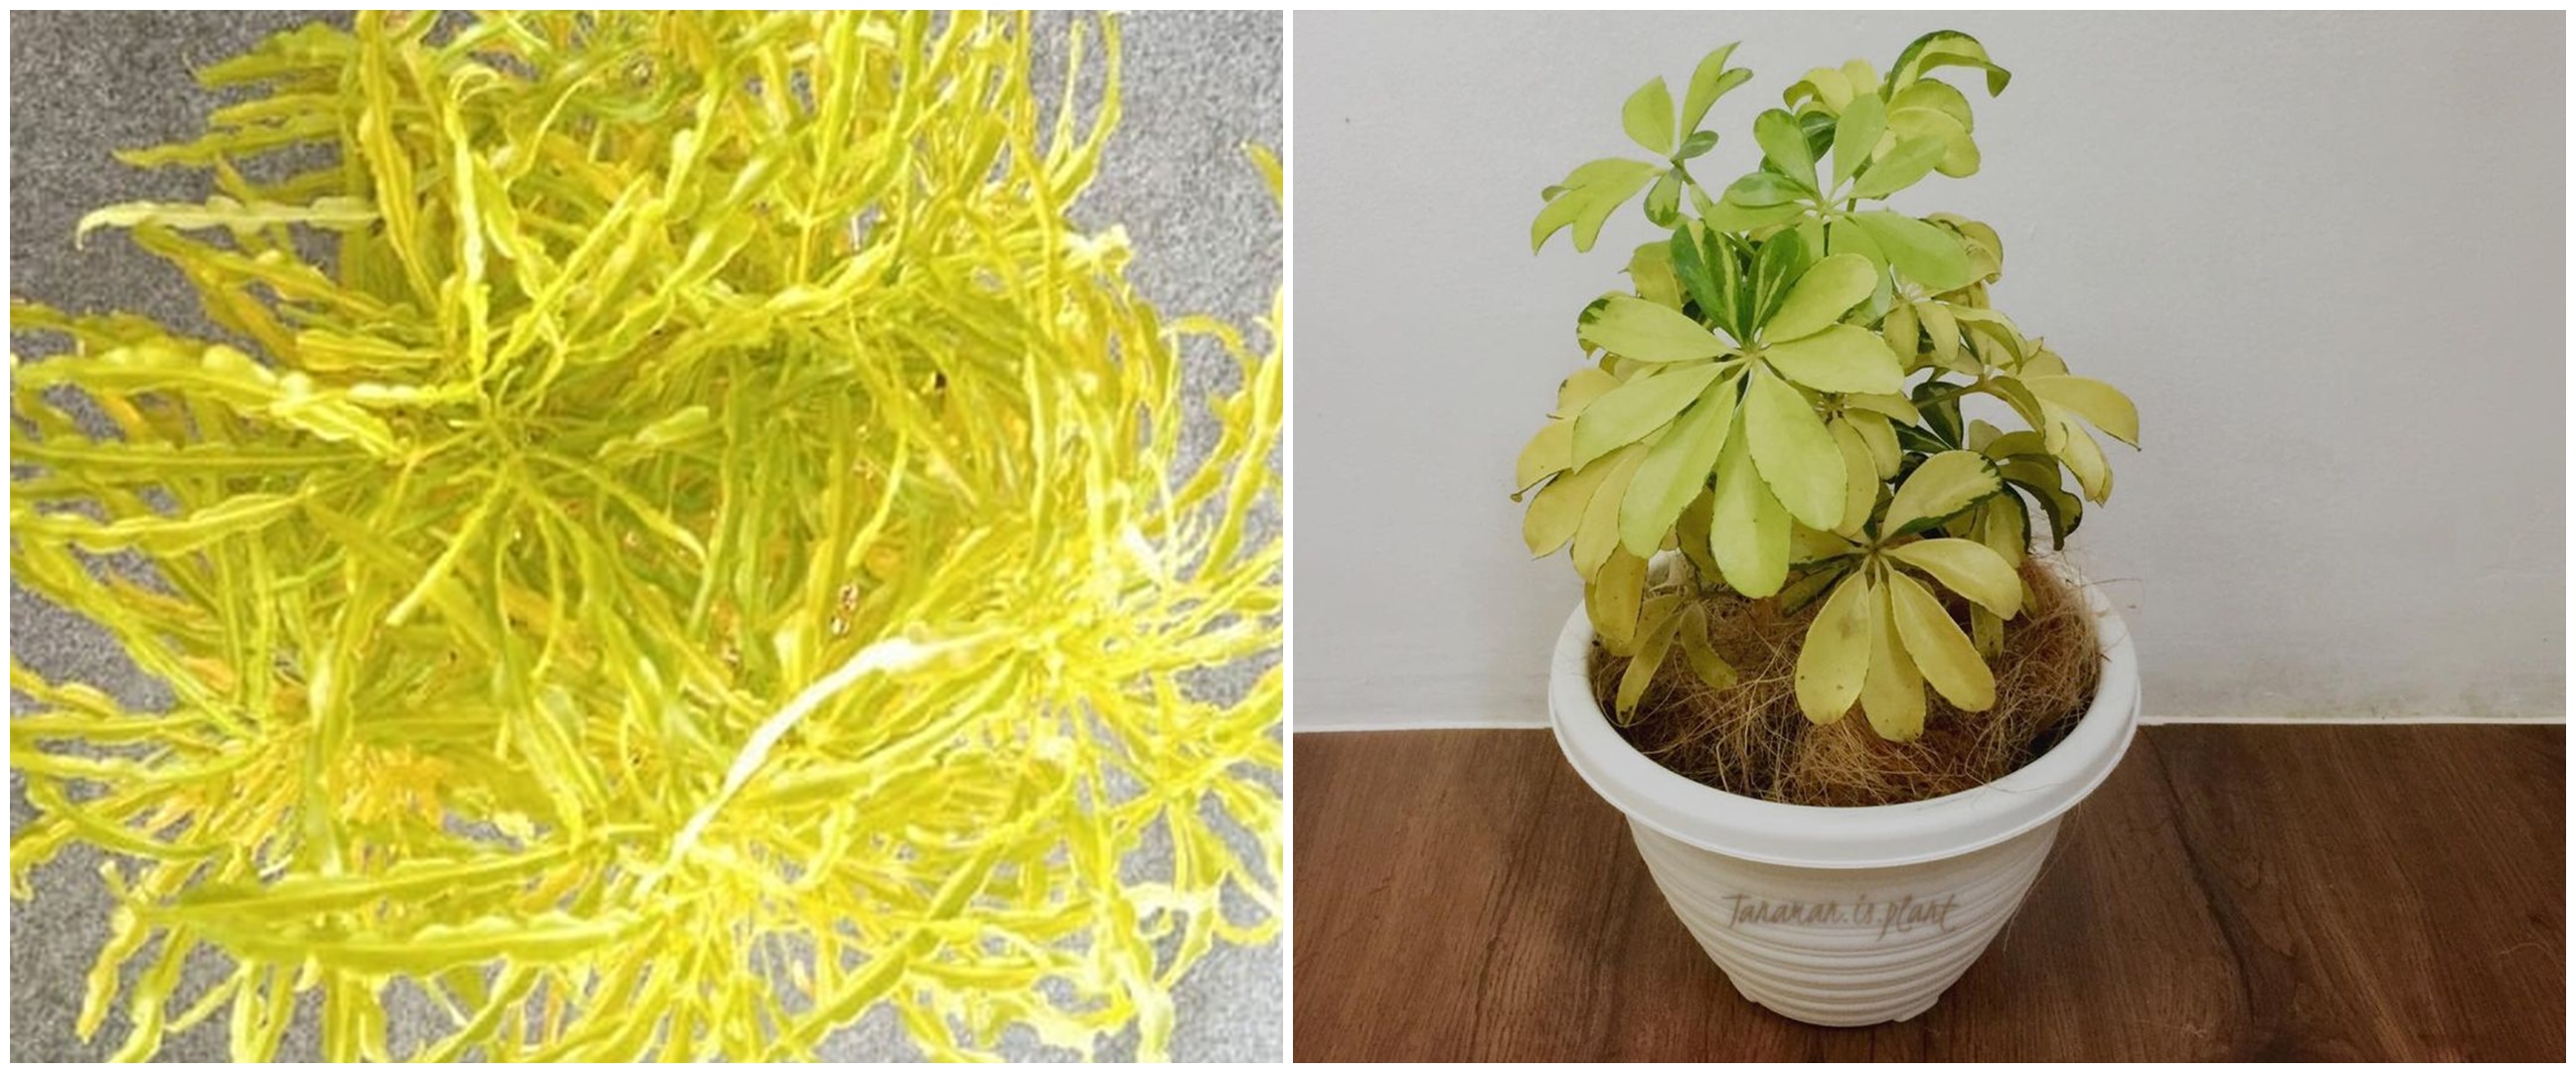 10 Tanaman hias daun kuning, bikin rumah lebih cantik dan asri